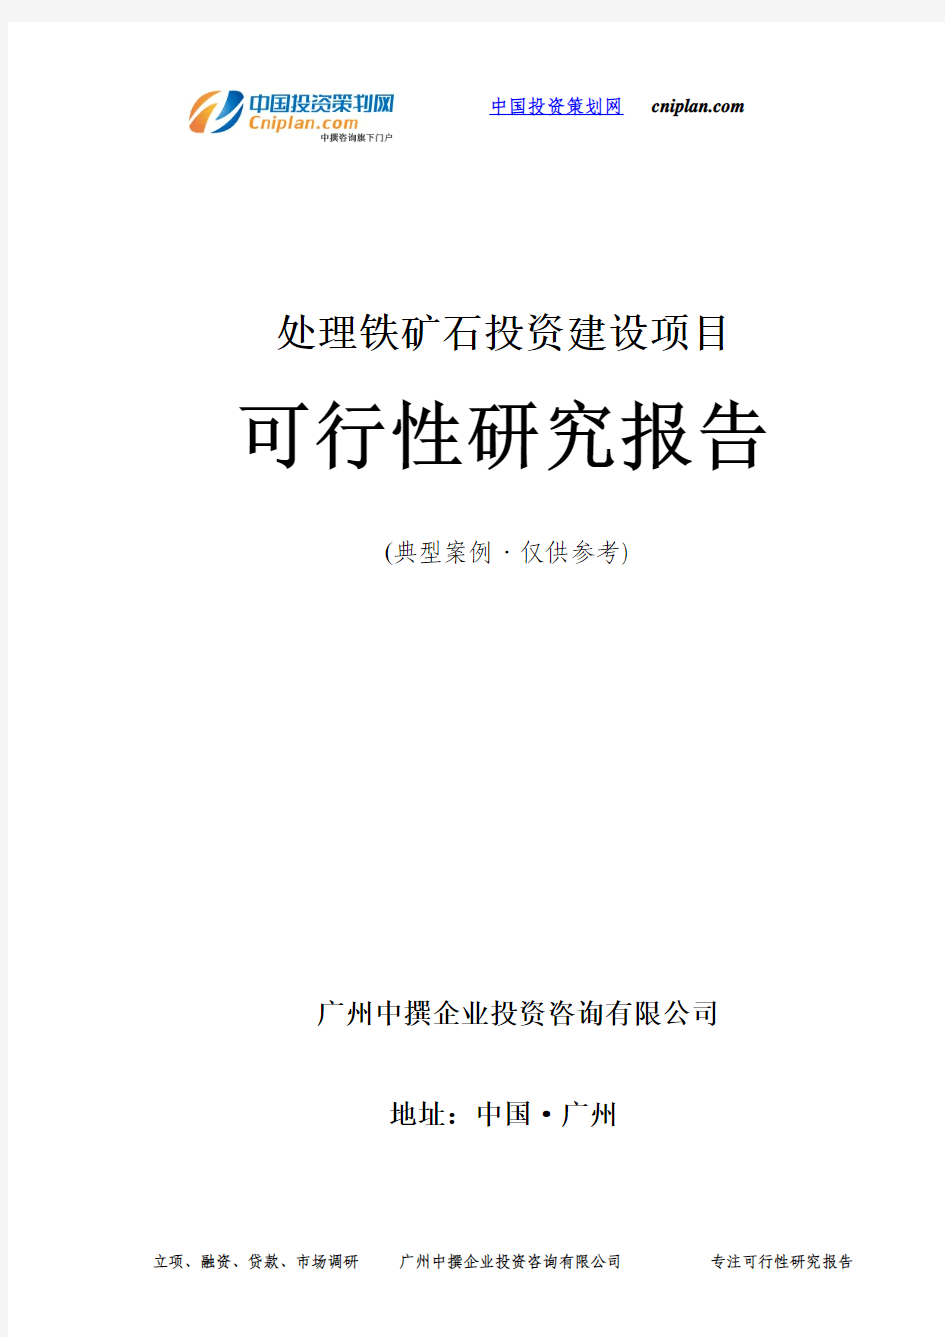 处理铁矿石投资建设项目可行性研究报告-广州中撰咨询